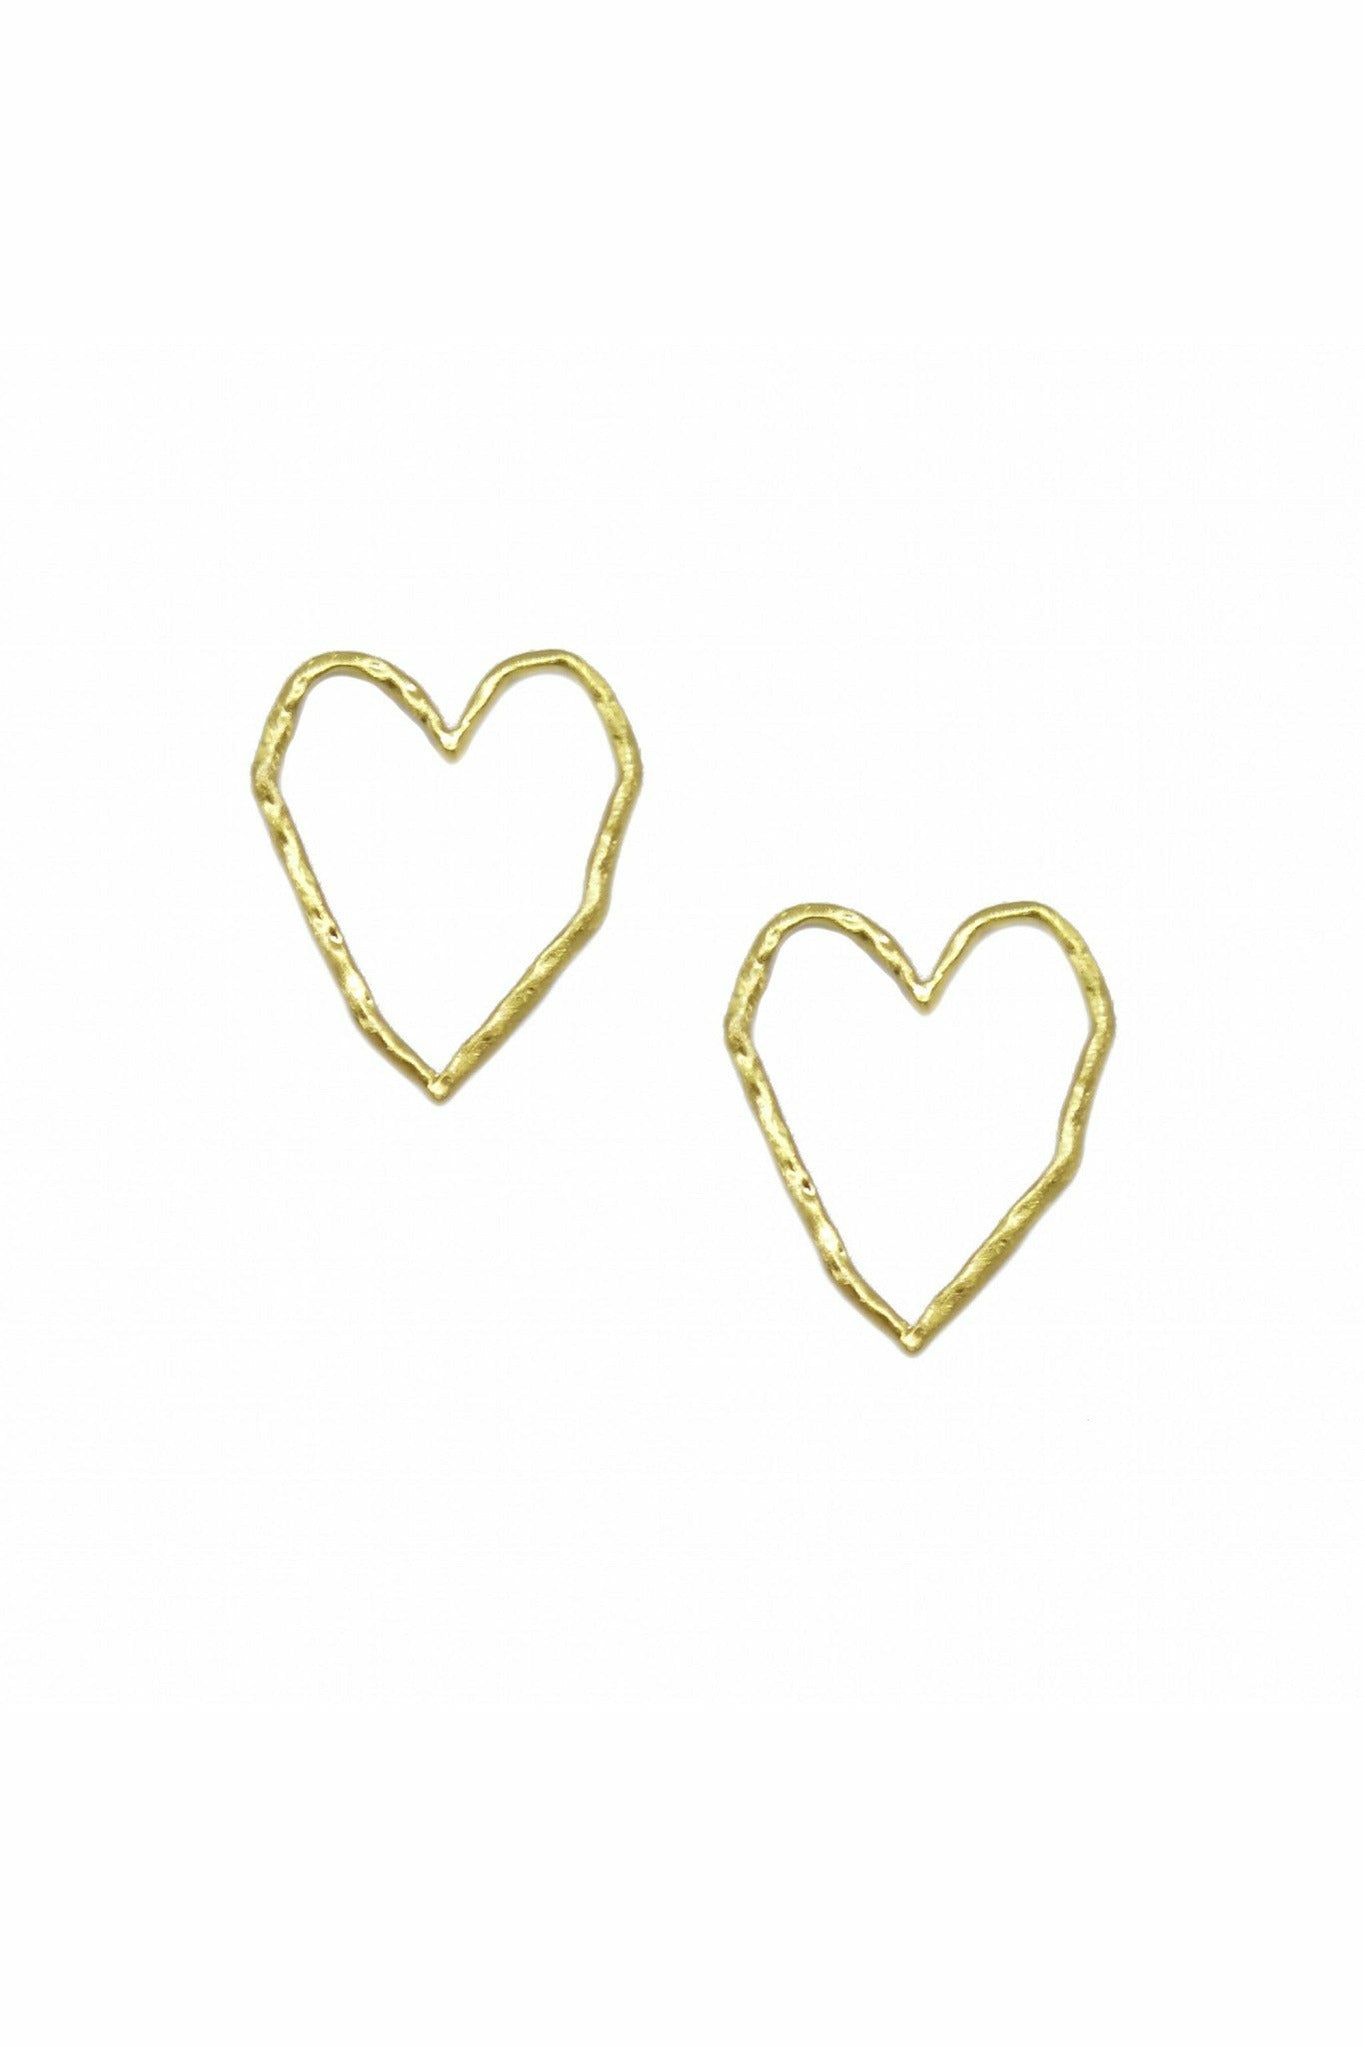 Heart Silhouette Earring In Hammered Matt Gold EAS67G